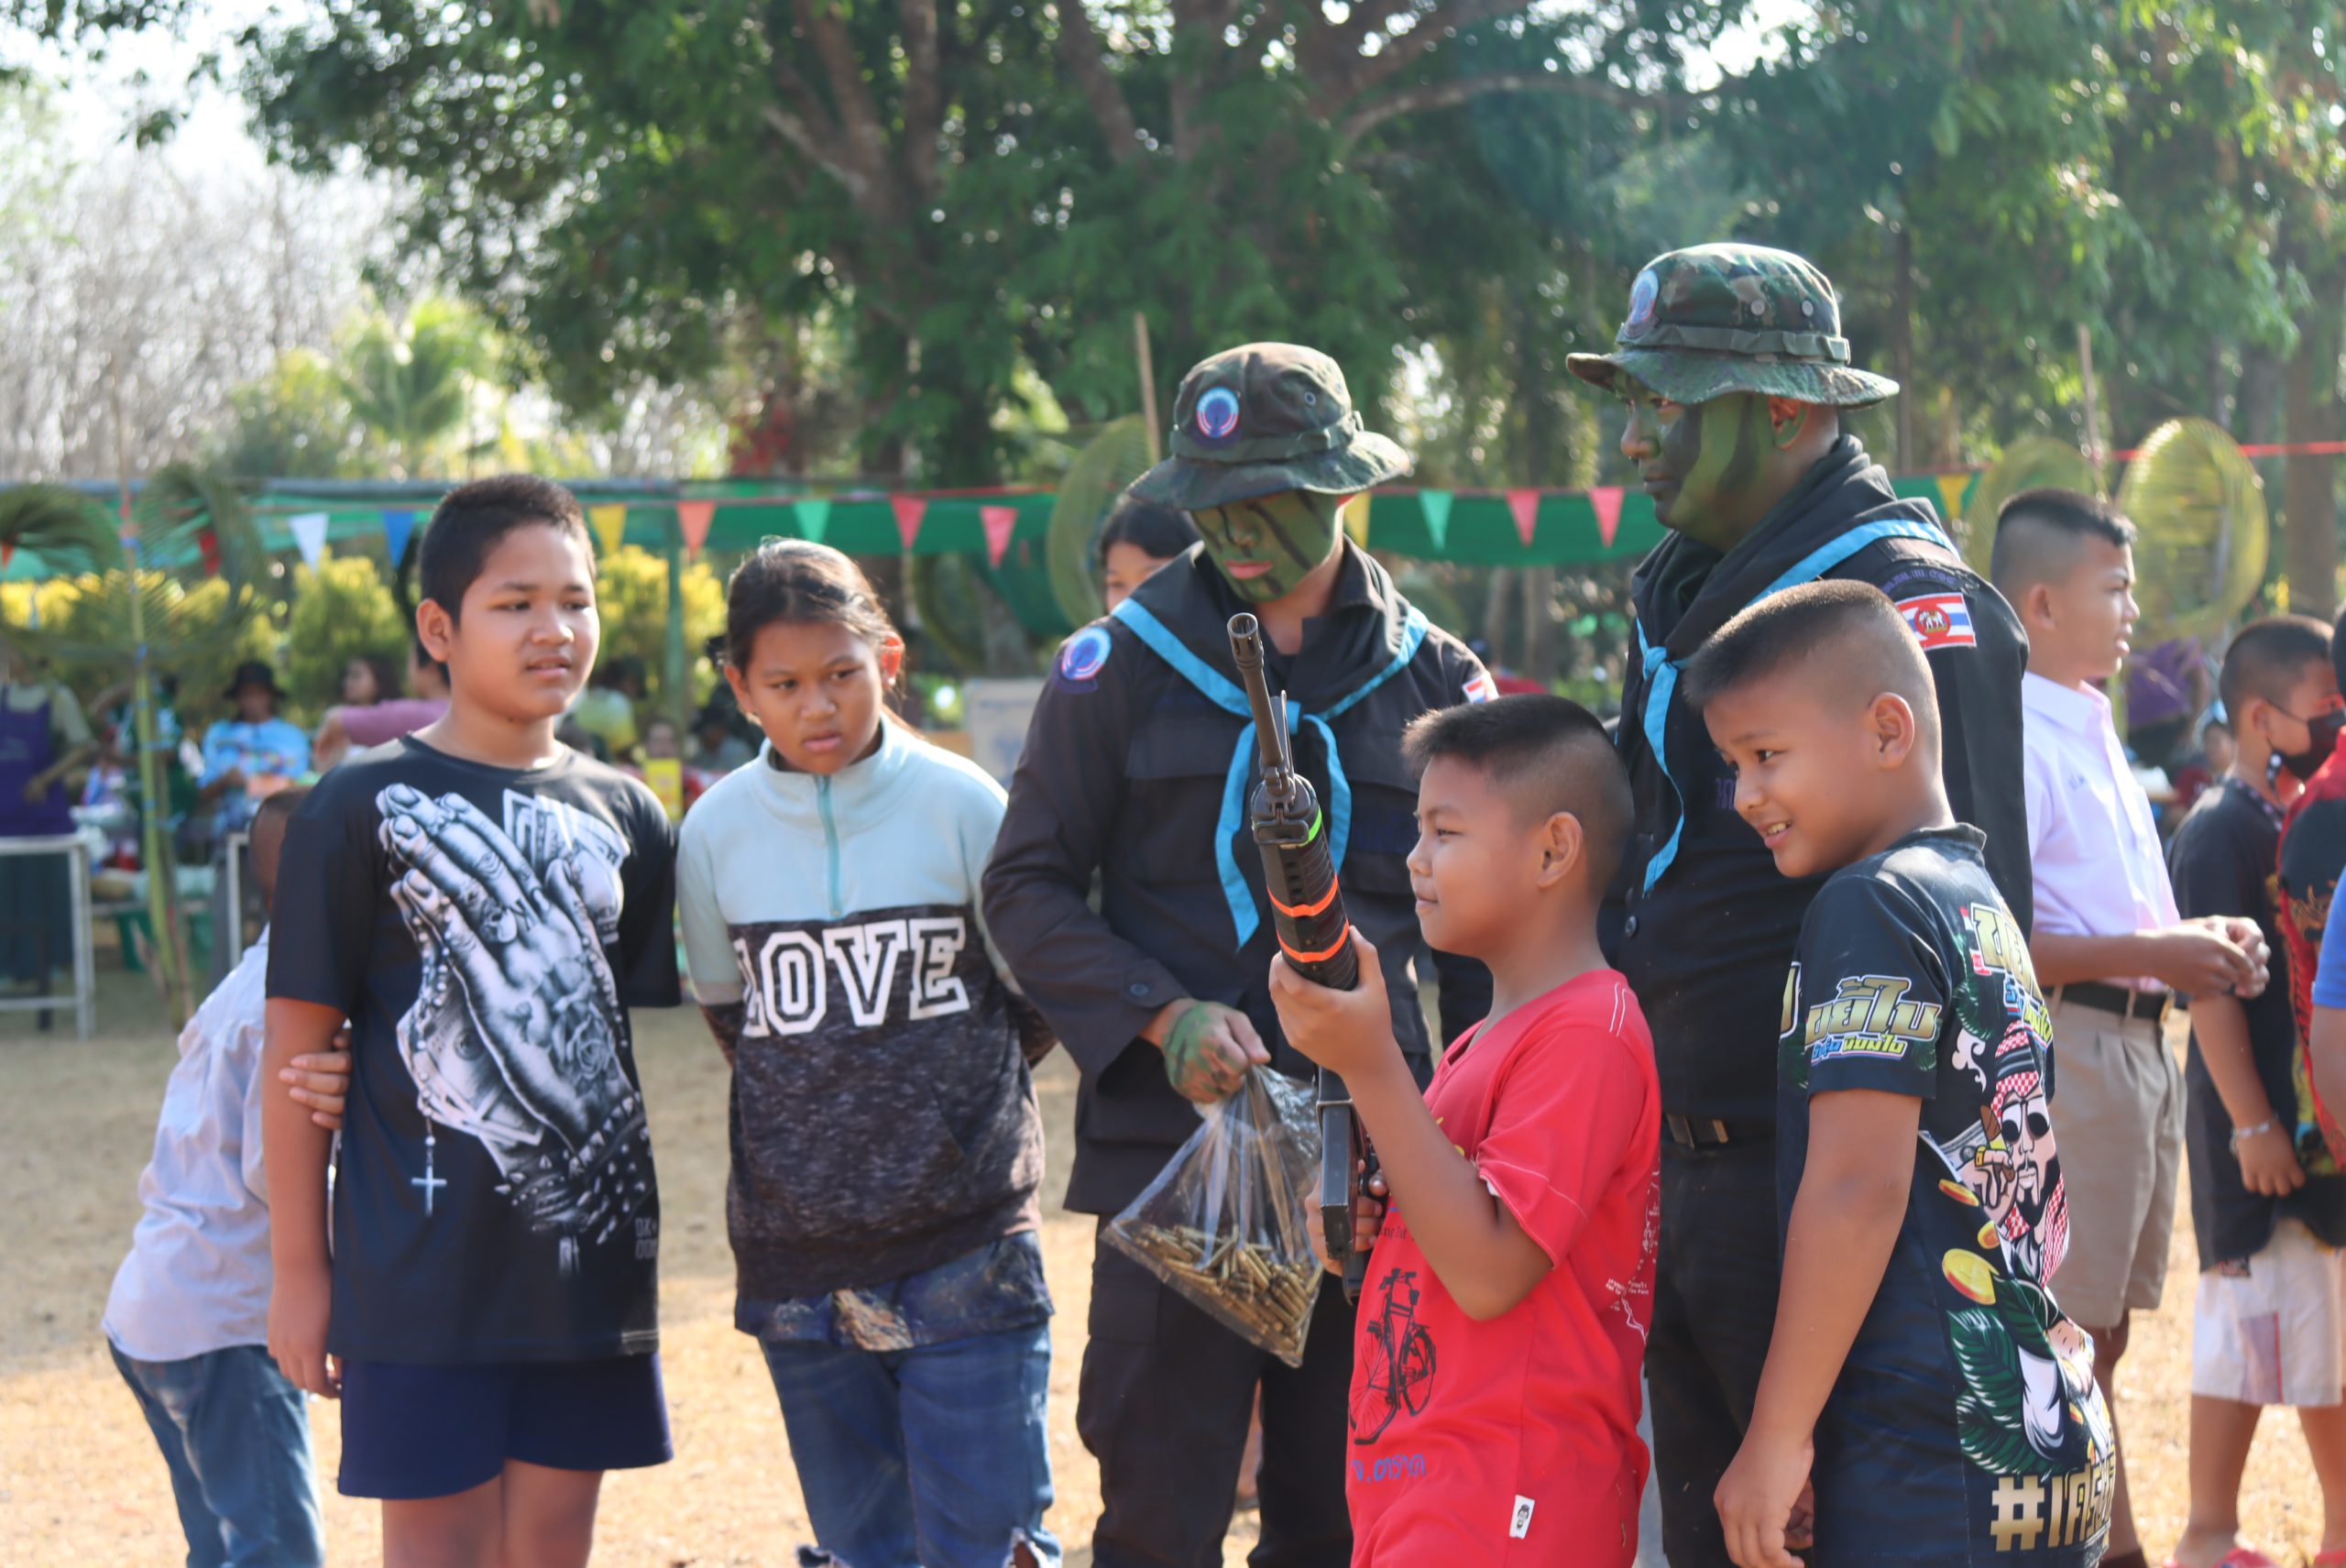 ตราด-ทหารพรานช่วยวันเด็ก จัดแสดงยุทธวิธีใช้อาวุธปืน เล่นเกม แจกของขวัญให้เด็กบ่อไร่